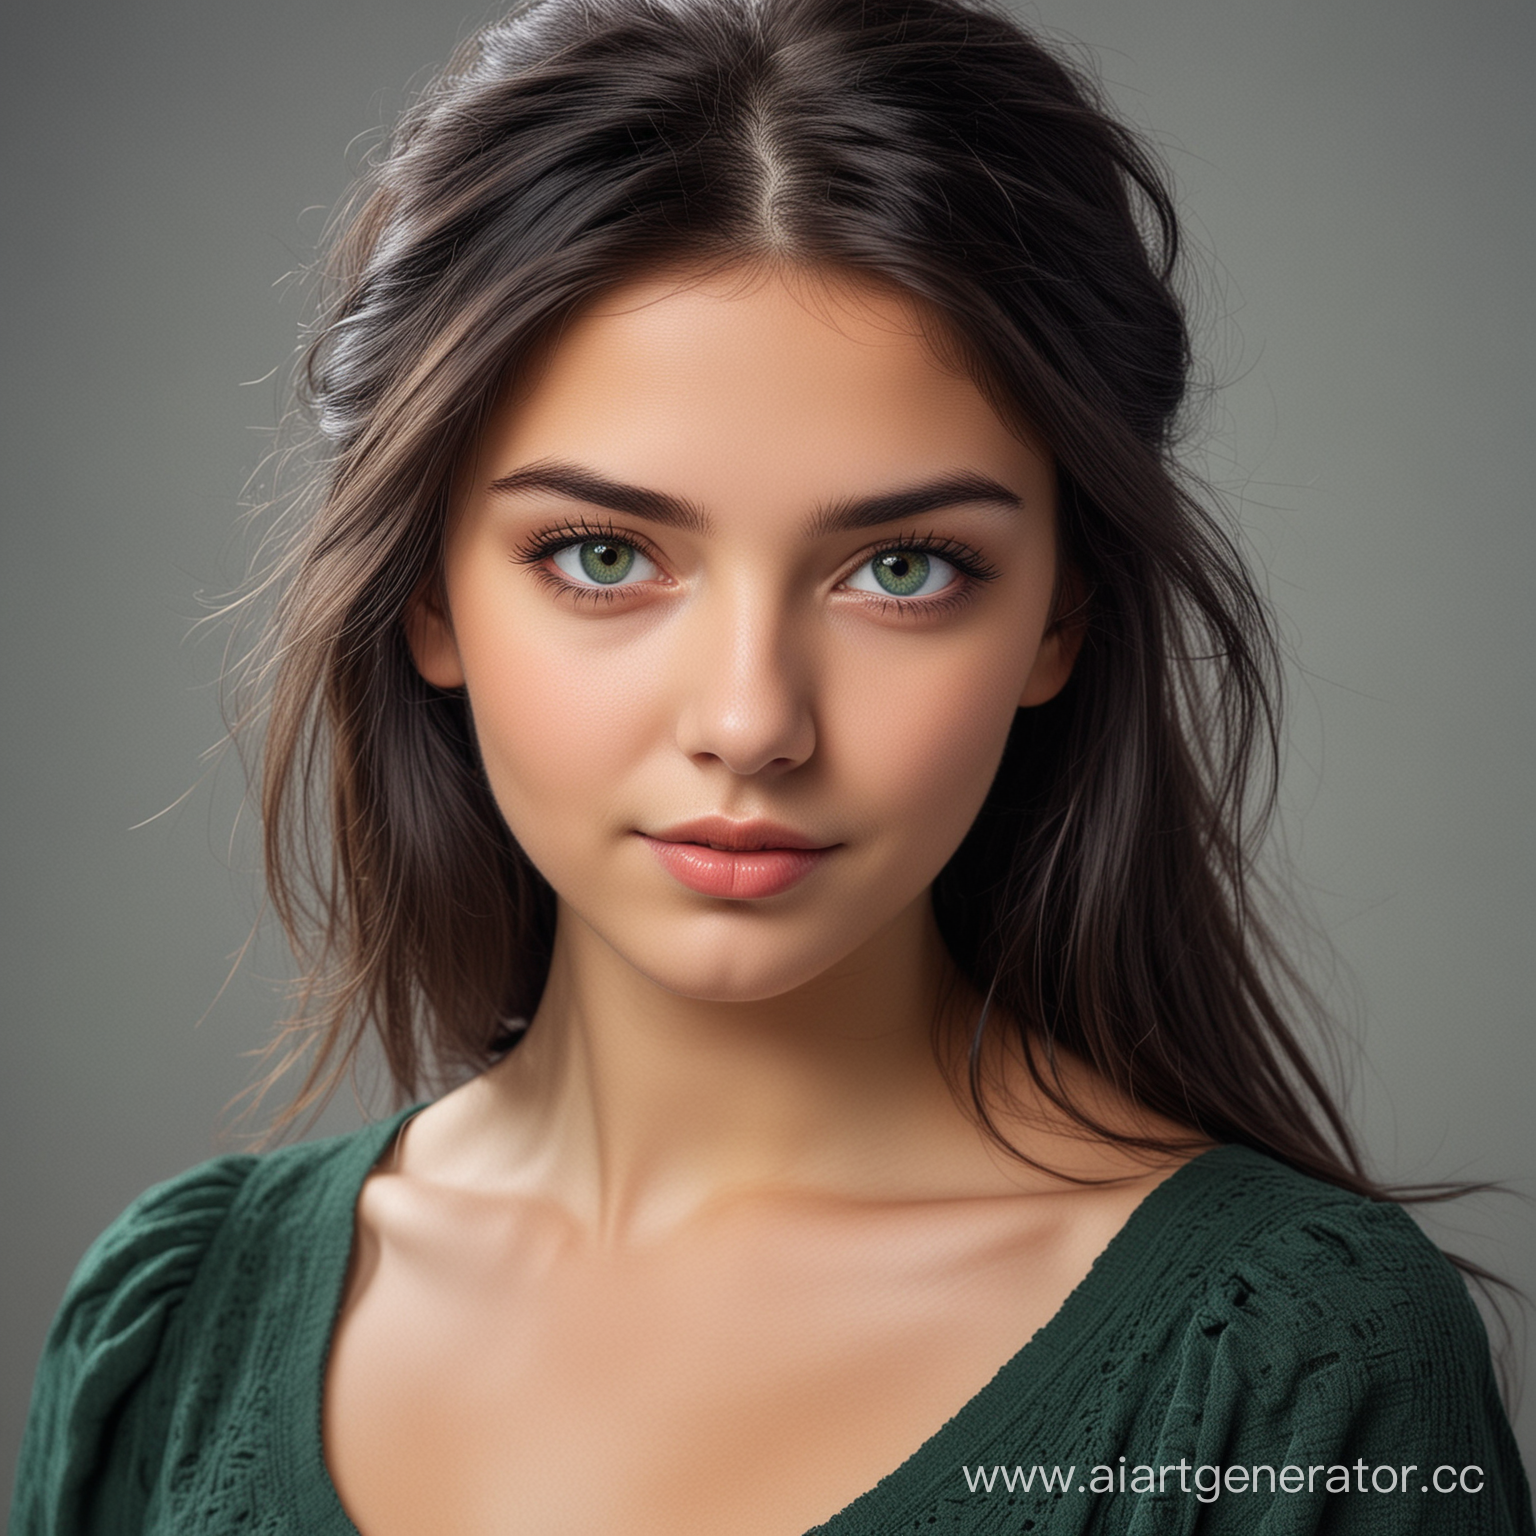 Молодая девушка, в темными волосами и зелеными глазами, миловидной внешности